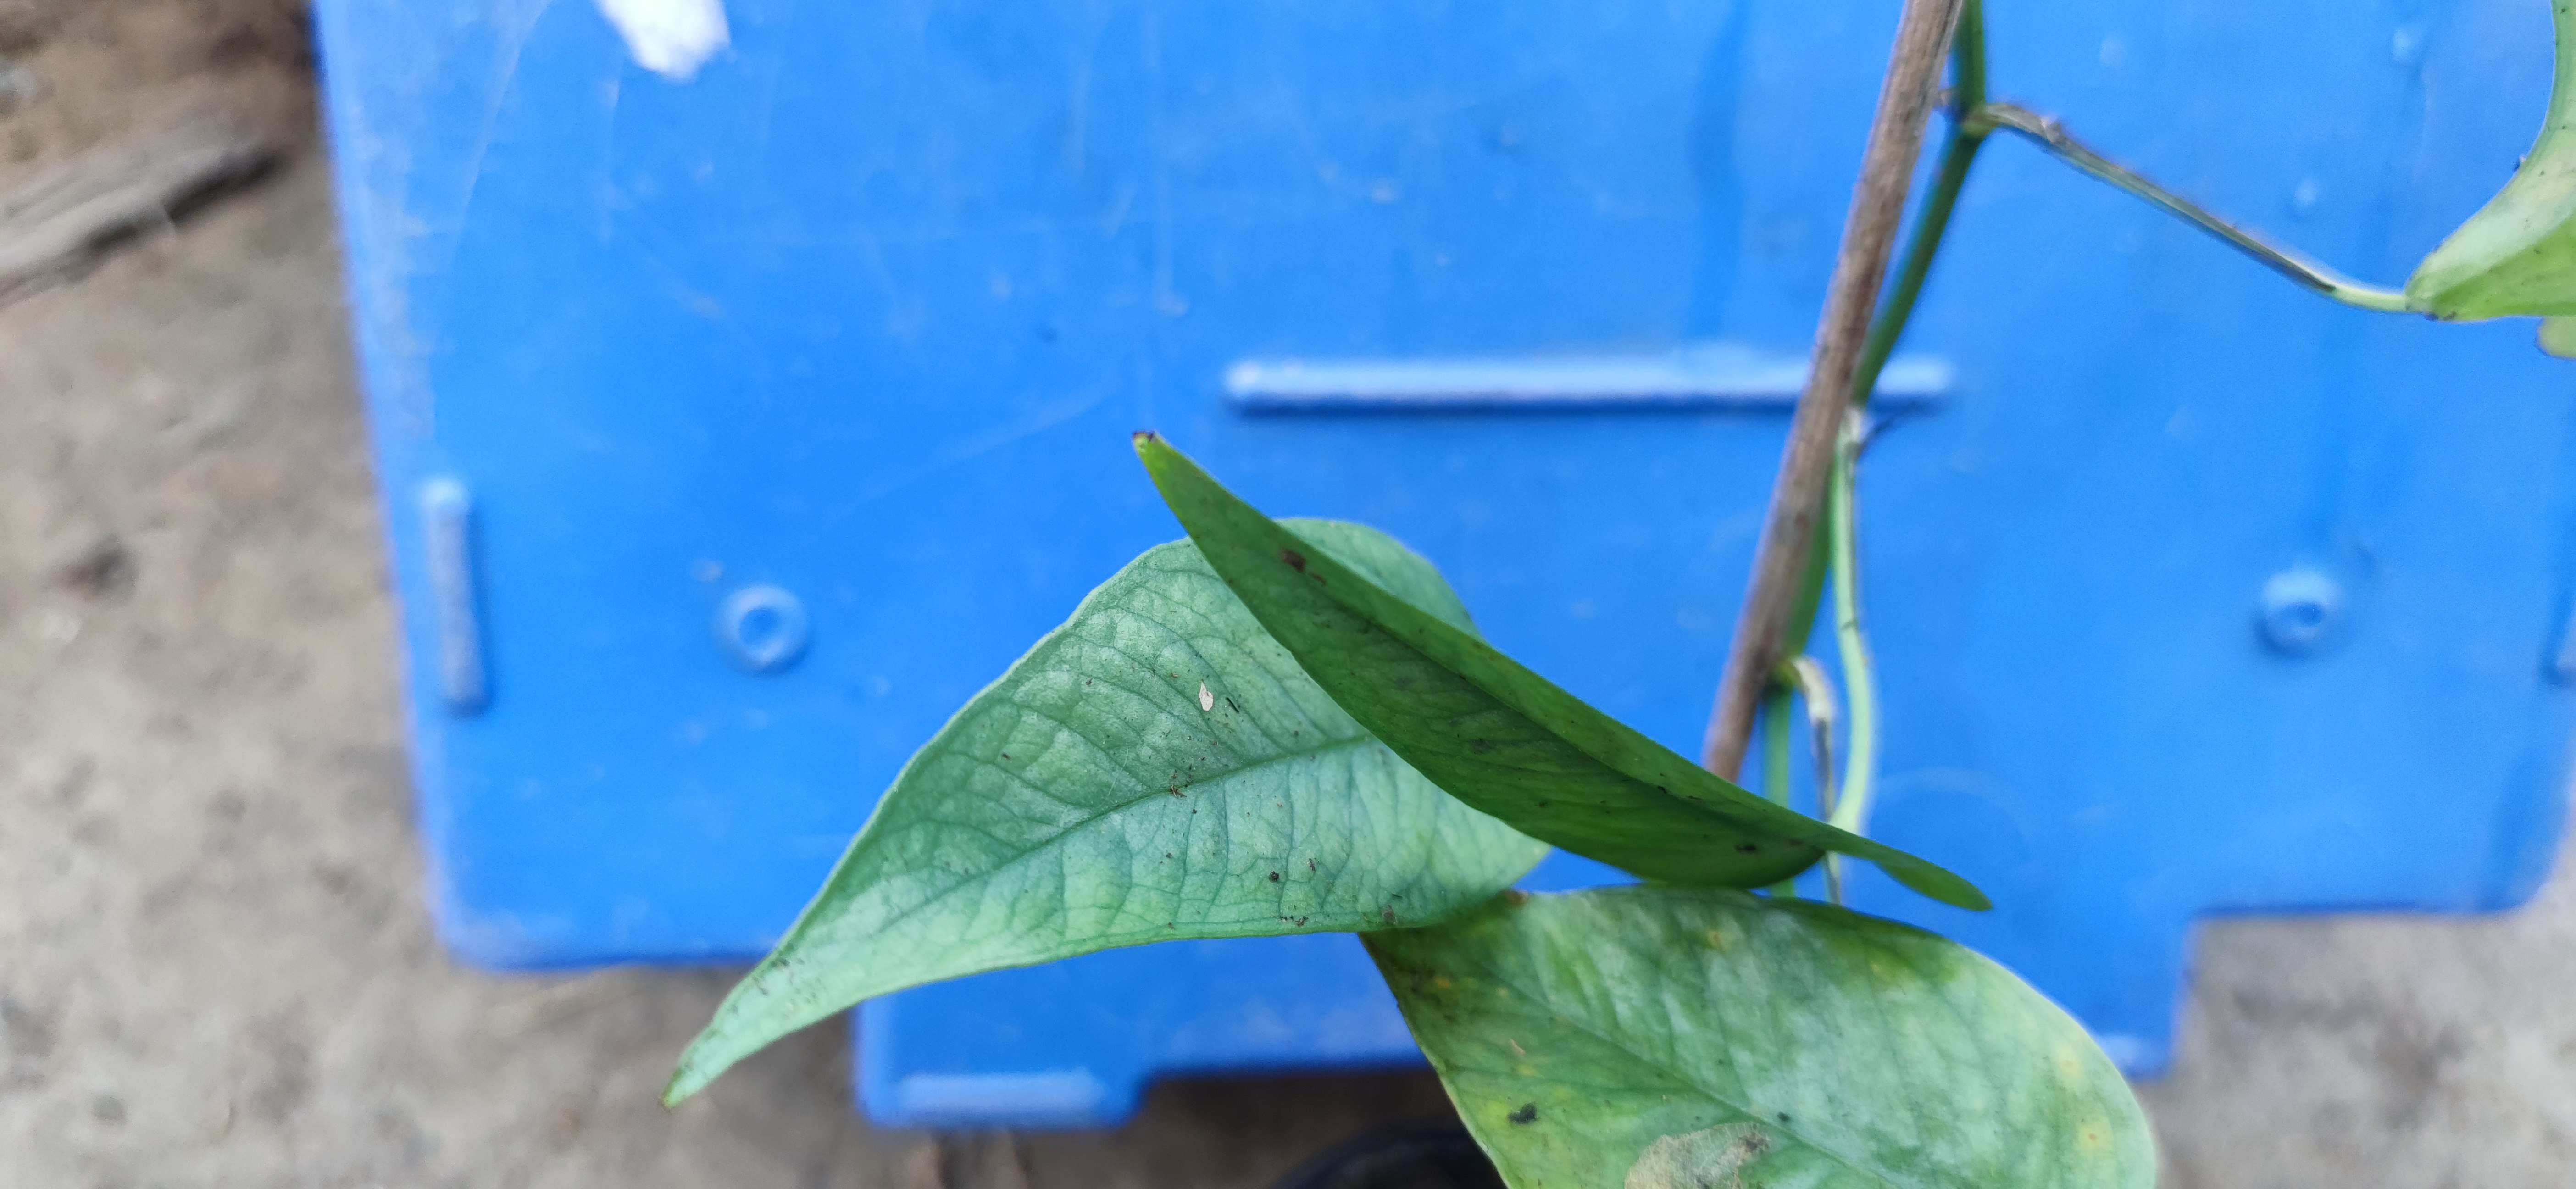 Epipremnum pinnatum "Cebu blue"